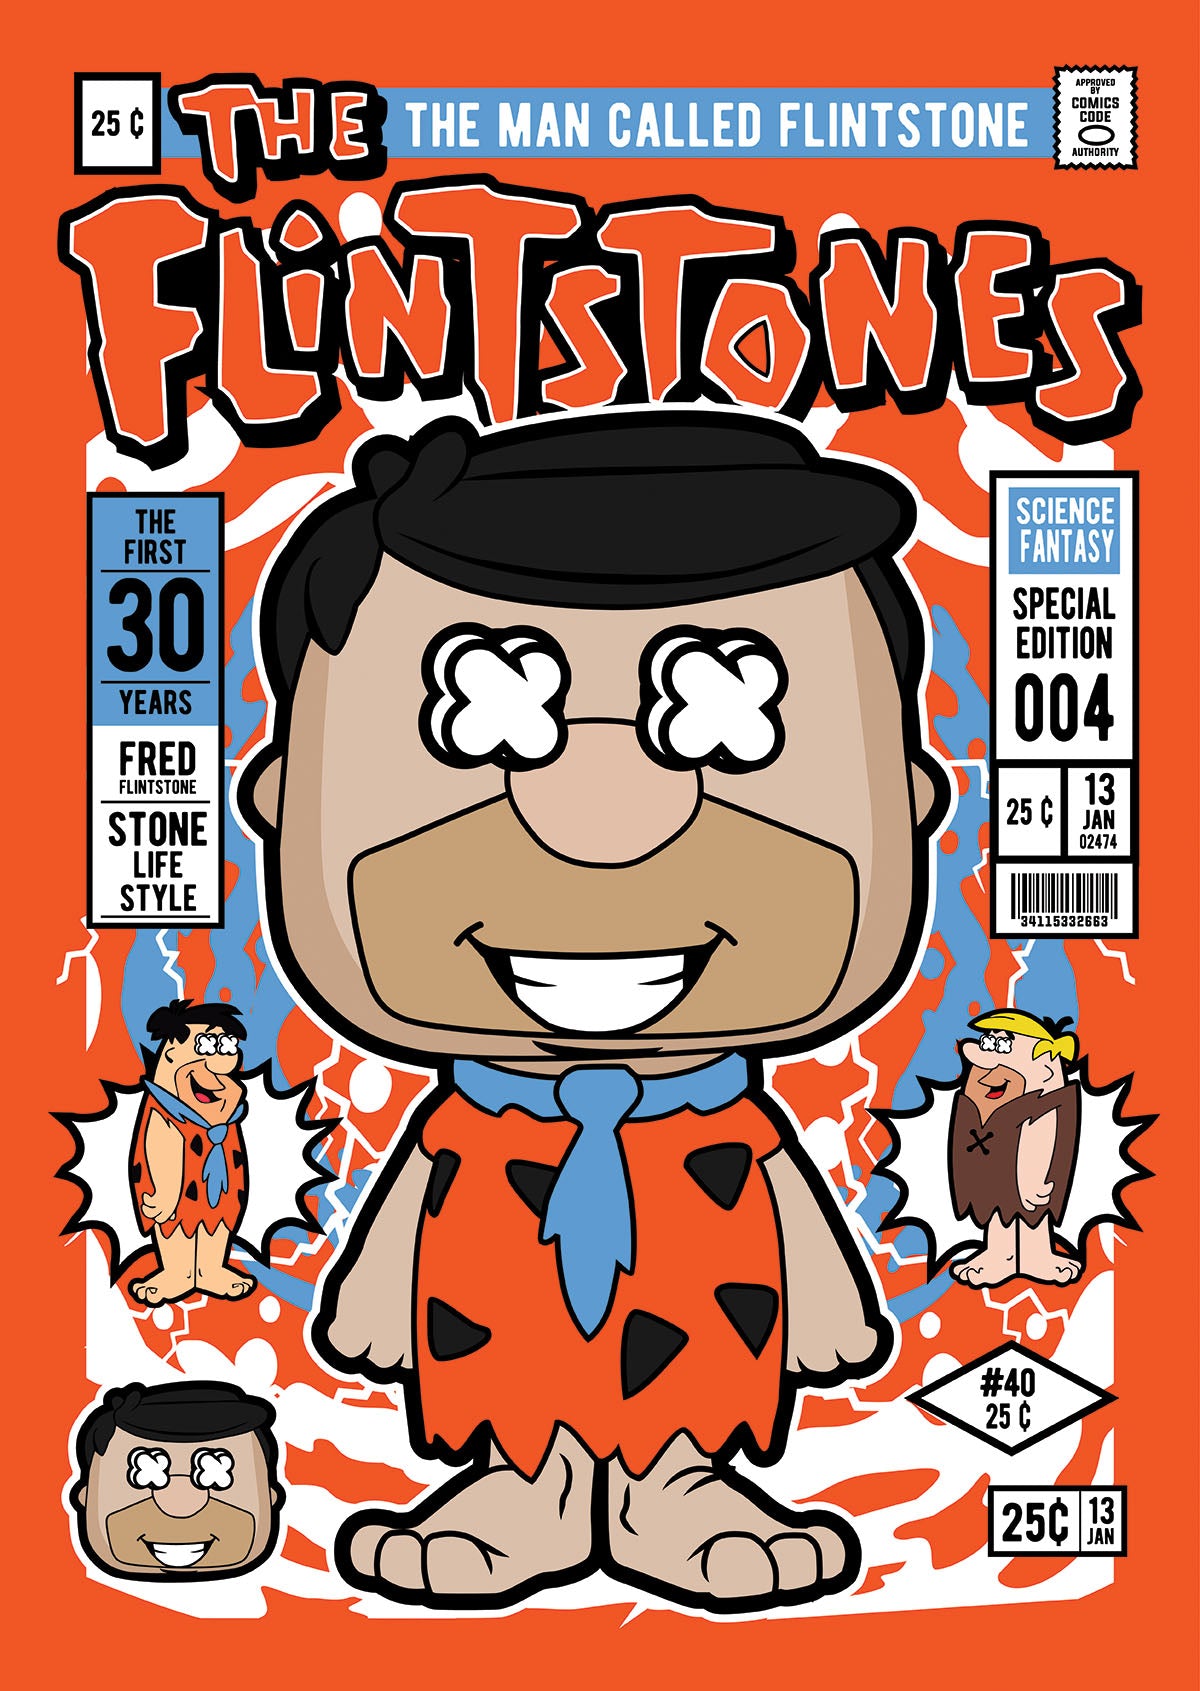 Fred Flintstone Pop Style